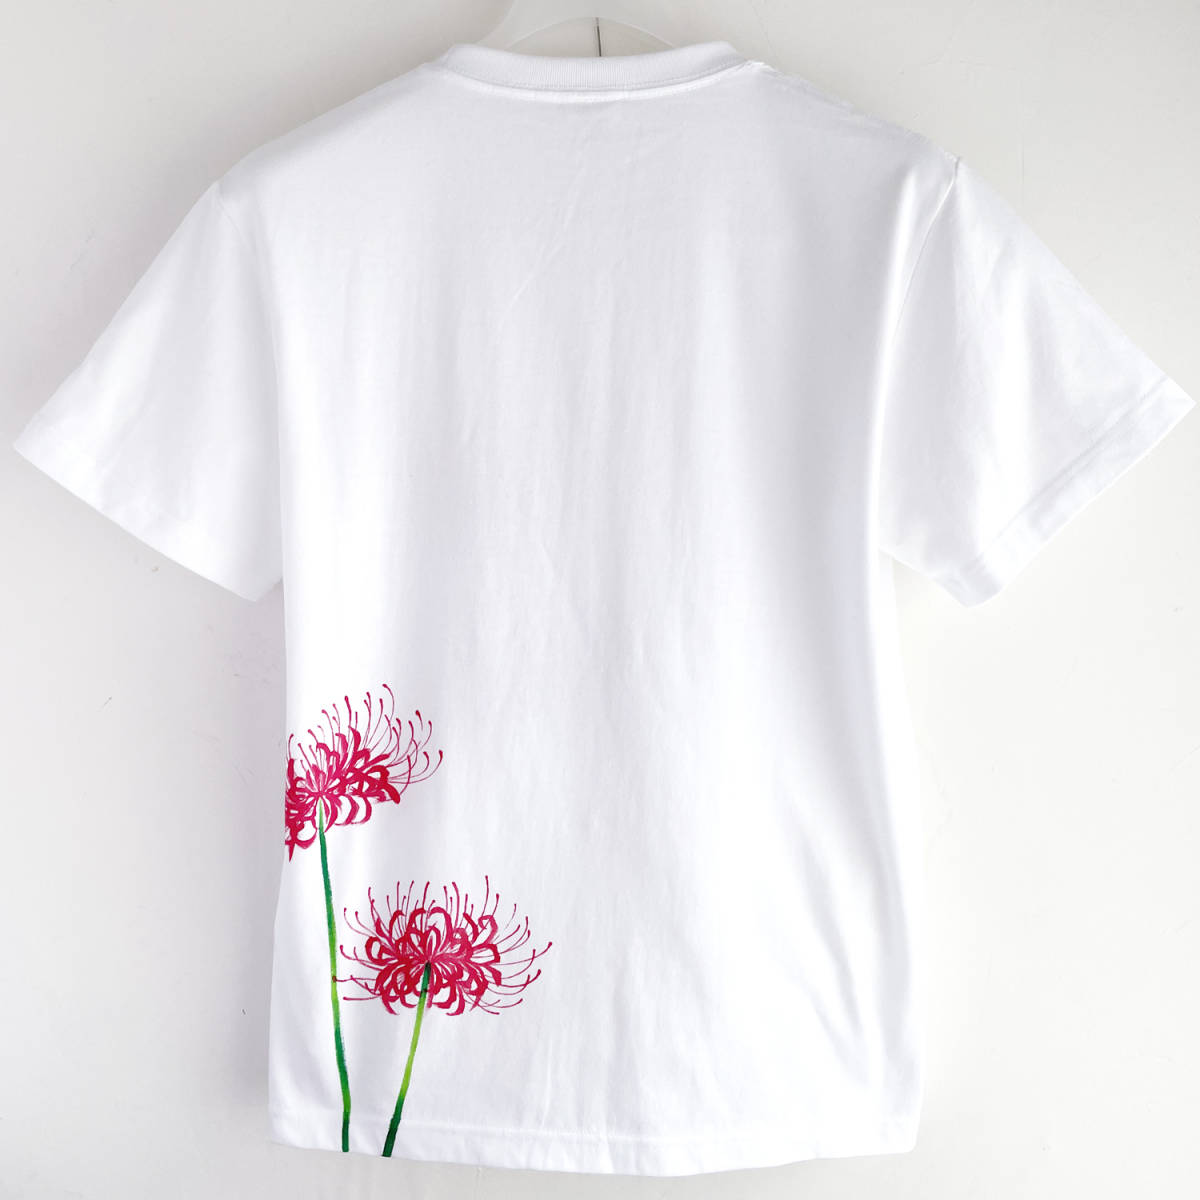 メンズ Tシャツ XXLサイズ 彼岸花柄Tシャツ 白 ハンドメイド 手描きTシャツ 和柄 花柄 秋冬_画像3